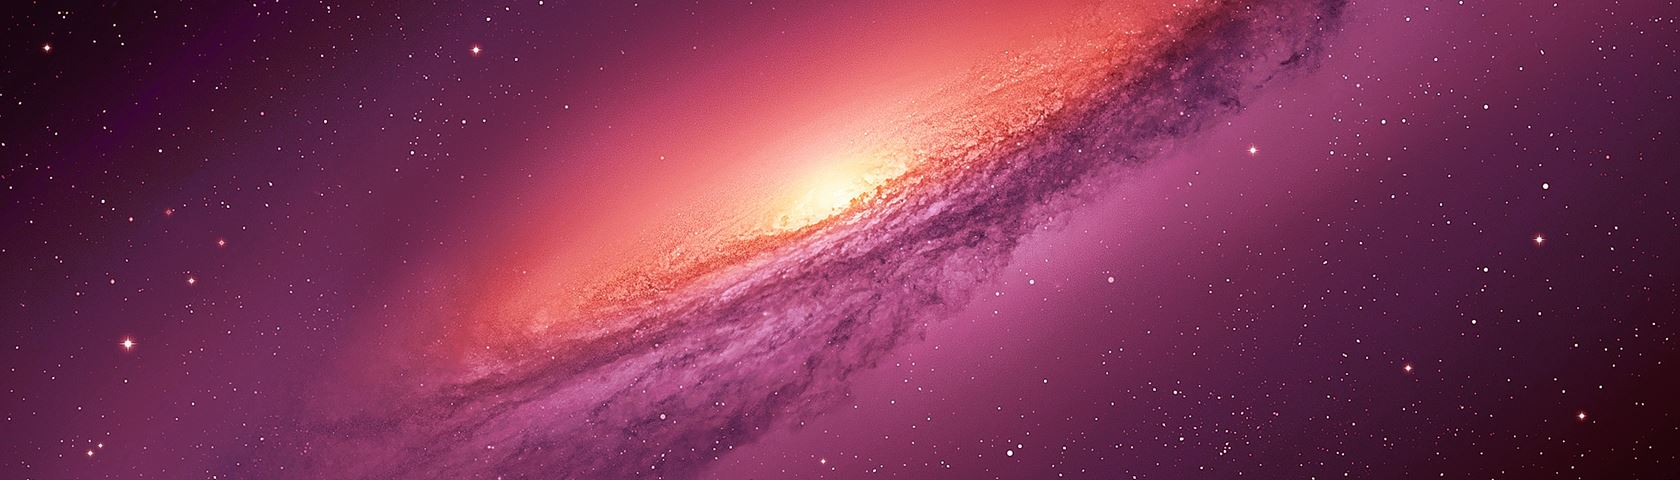 Fuchsia Galaxy